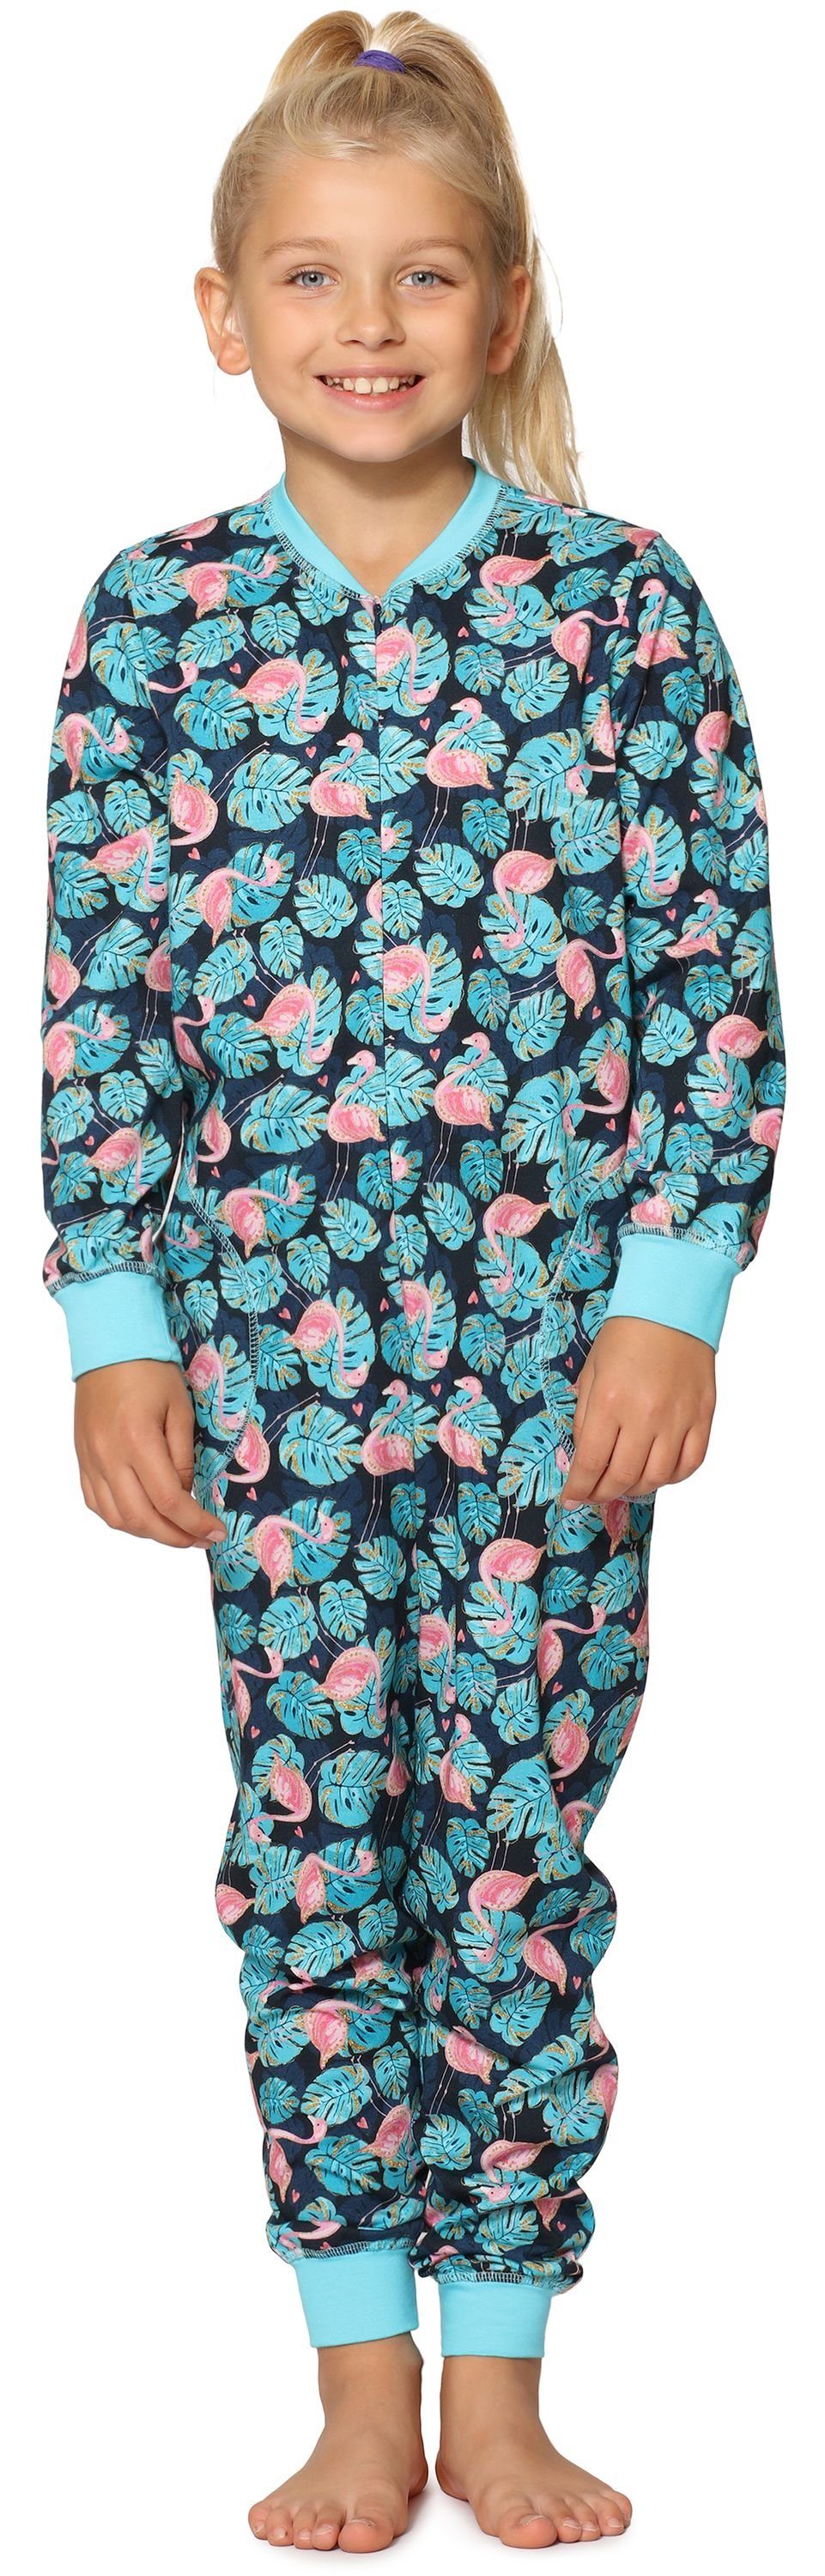 Merry Style Schlafanzug Mädchen Flamingos Türkis MS10-186 Jumpsuit Schlafanzug